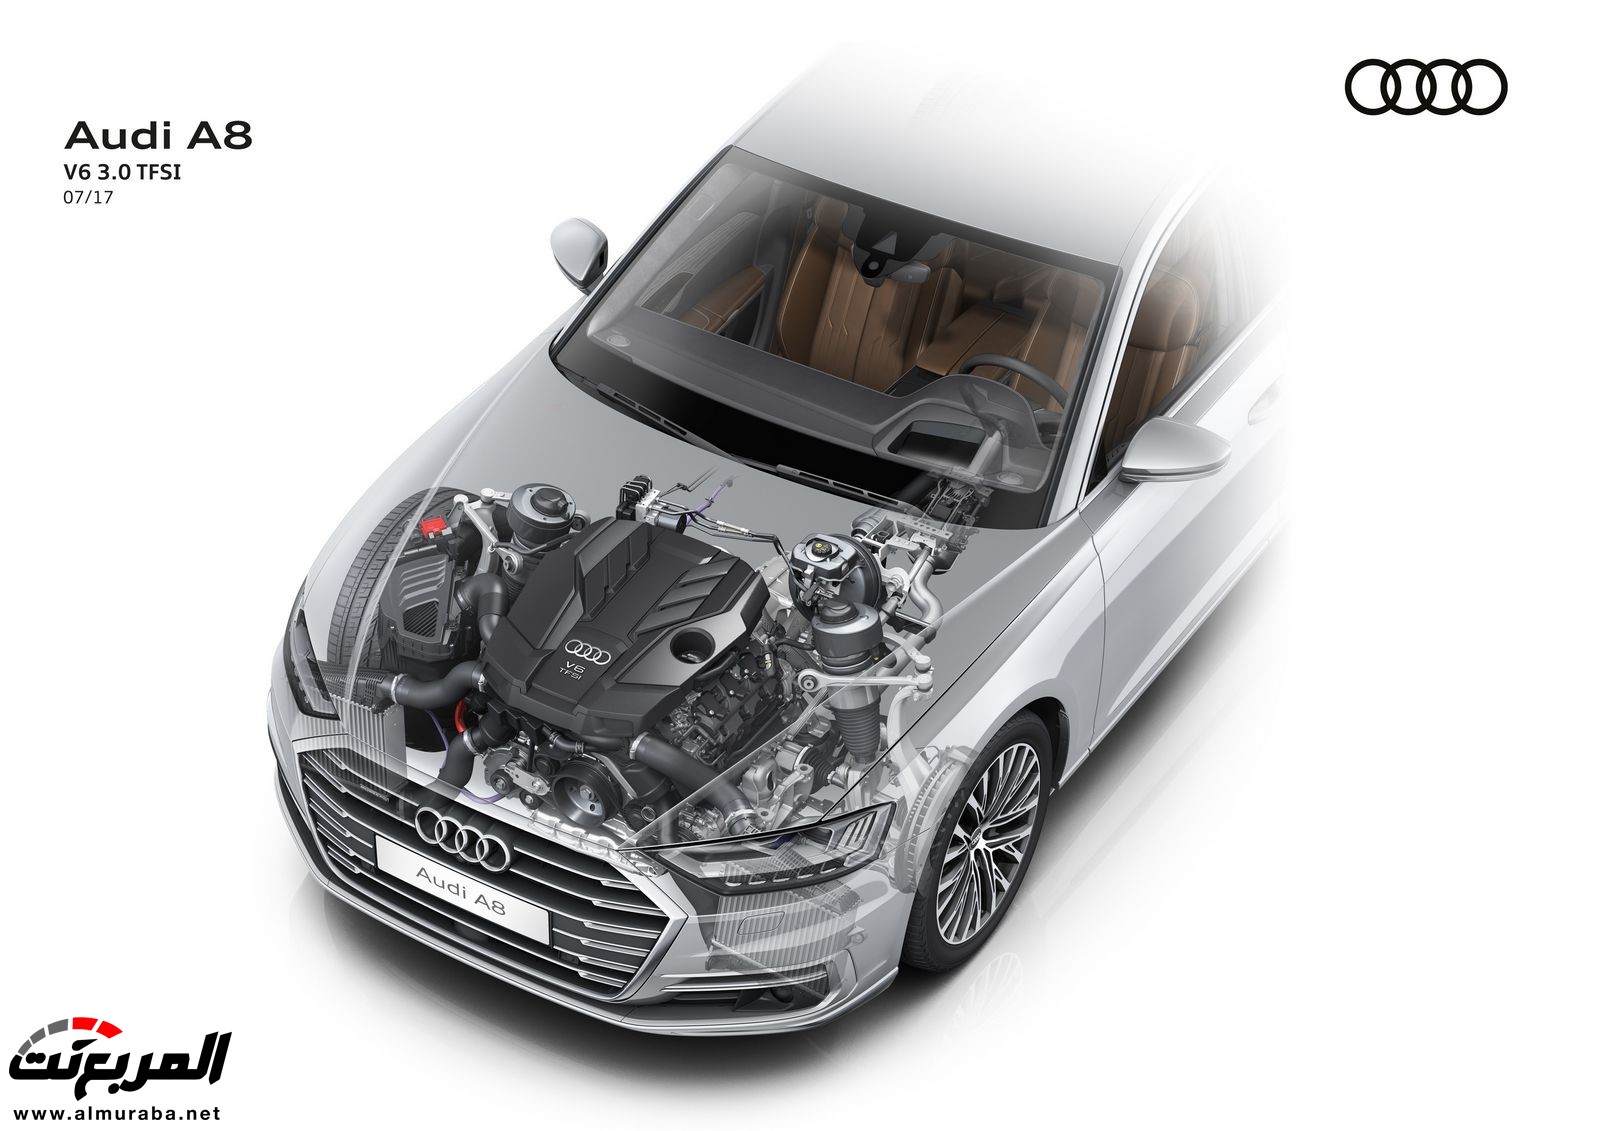 أودي A8 2018 الجديدة كلياً تكشف نفسها بتصميم وتقنيات متطورة "معلومات + 100 صورة" Audi A8 96